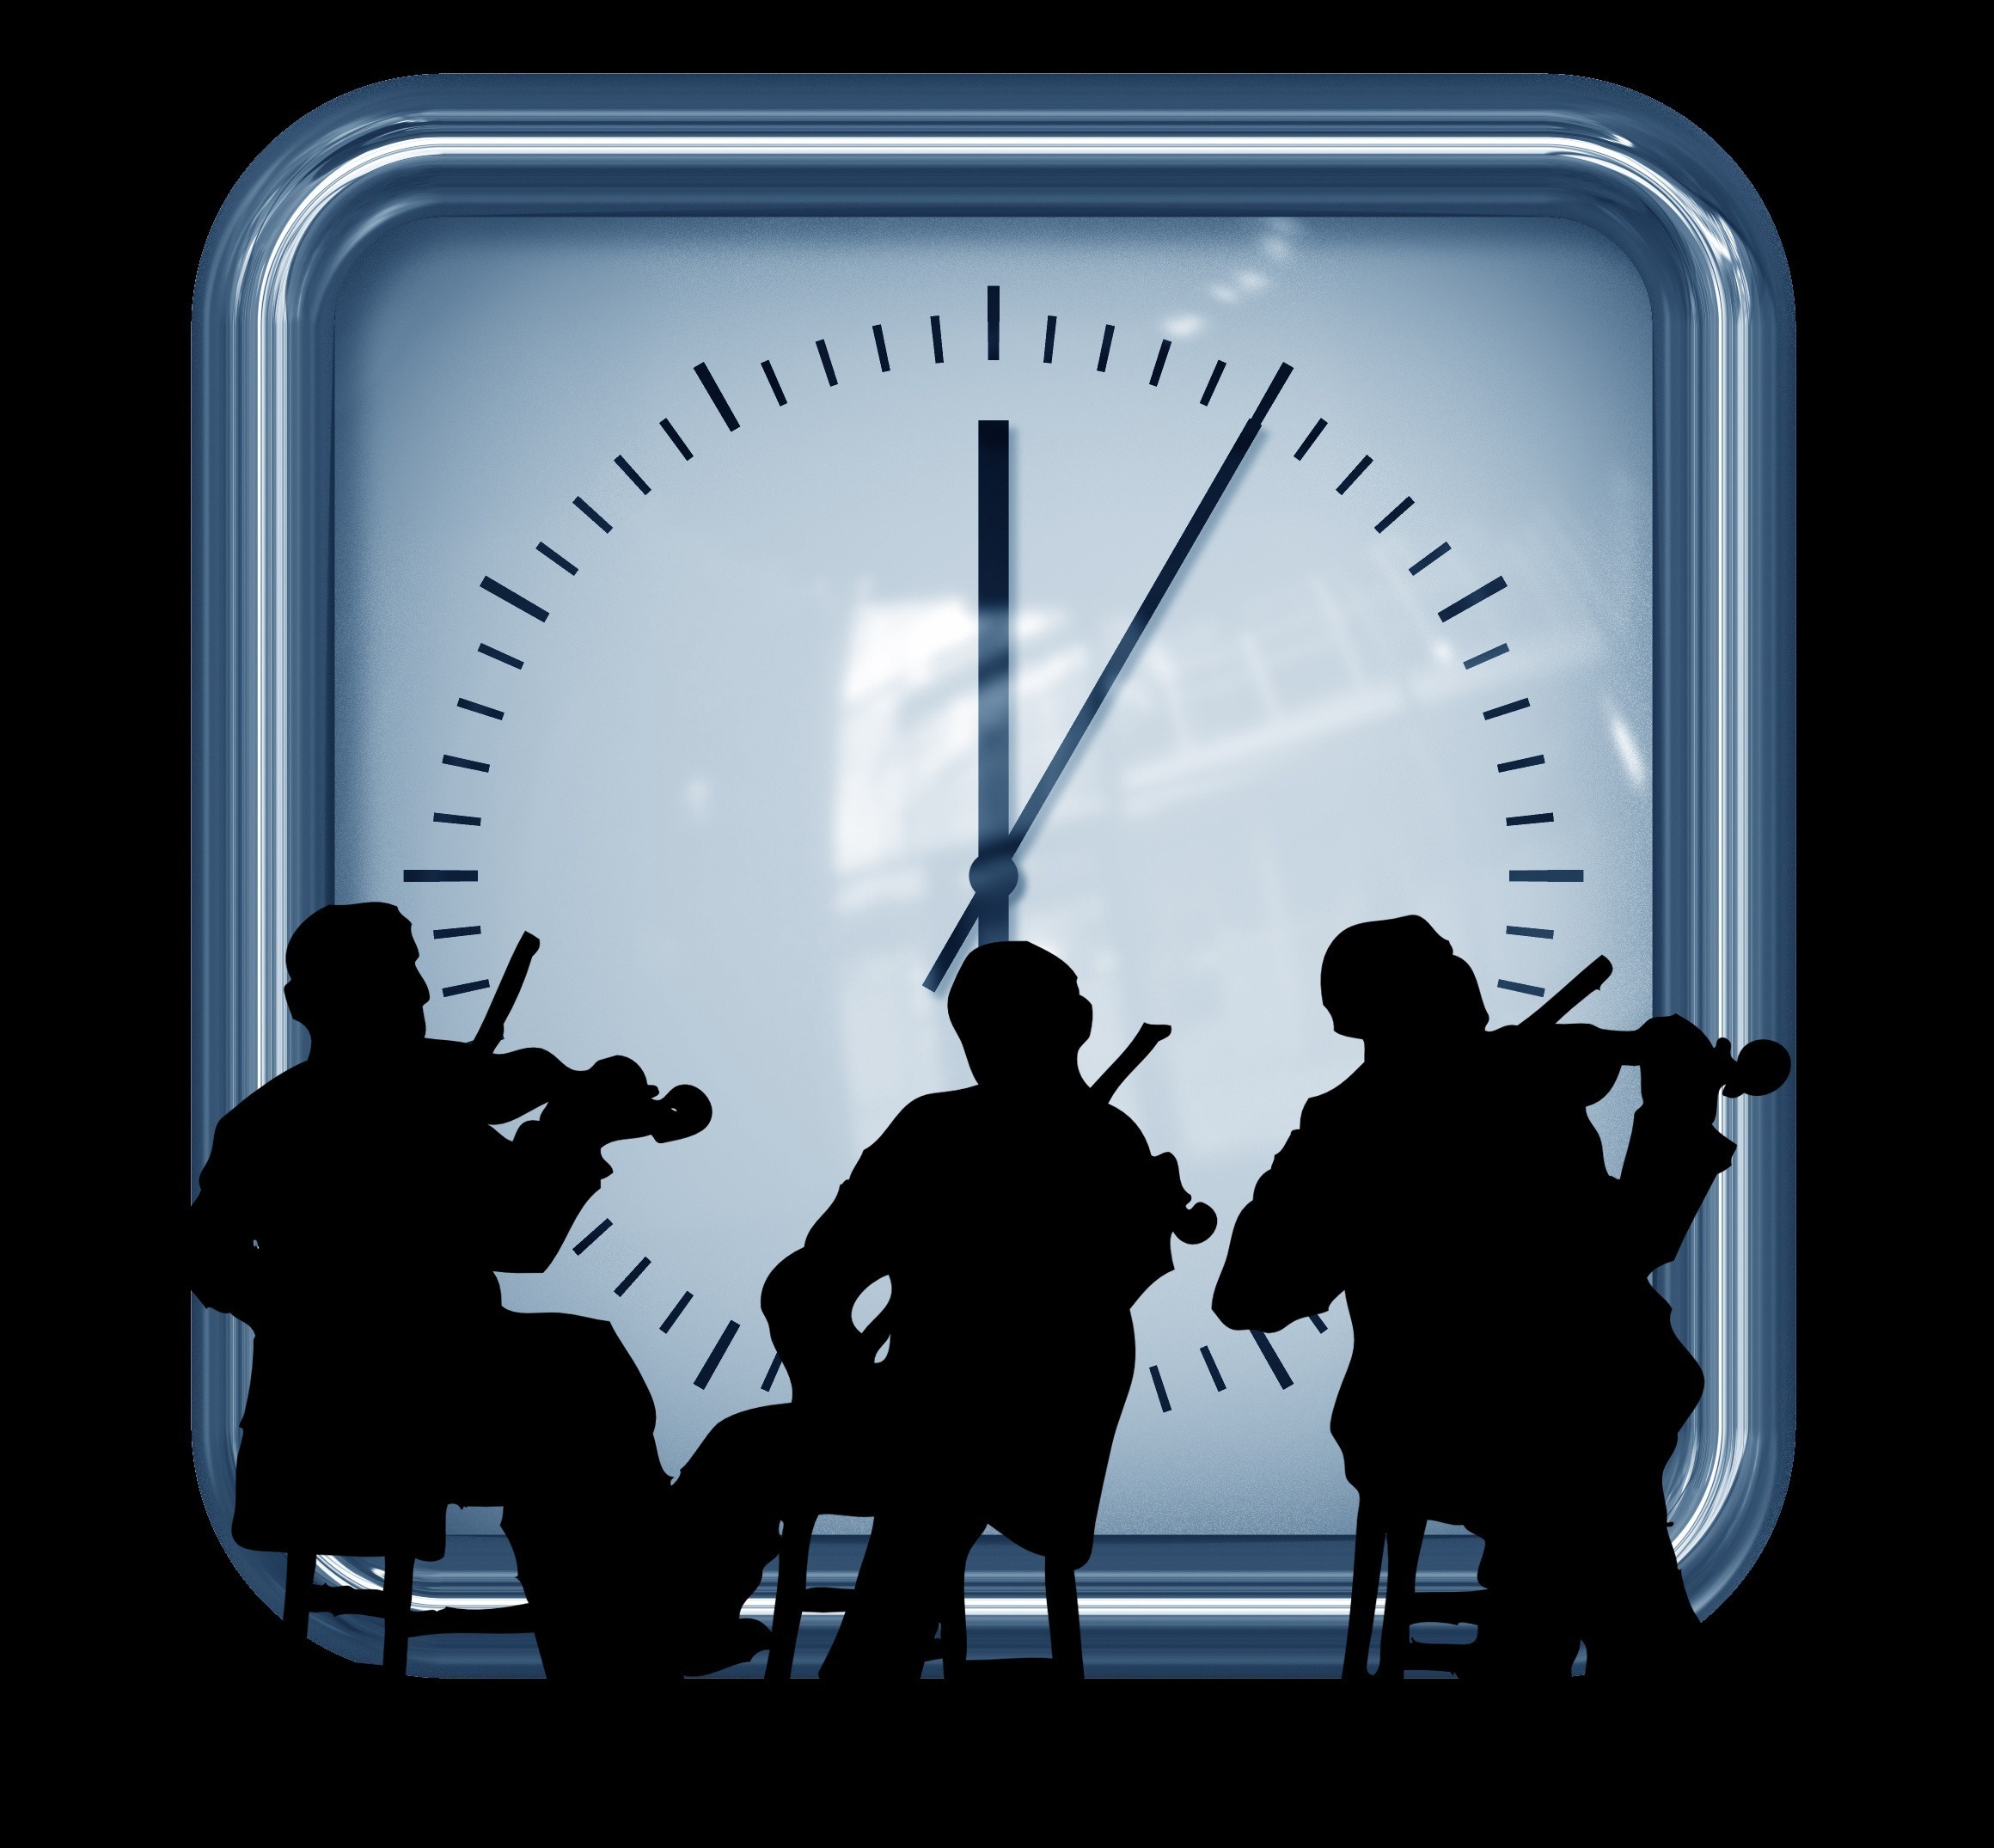 Bildmontage, svart siluett av tre violinspelande män på stolar. Stor urtavla bakom. Visarna visar klockslaget 18:00:05.